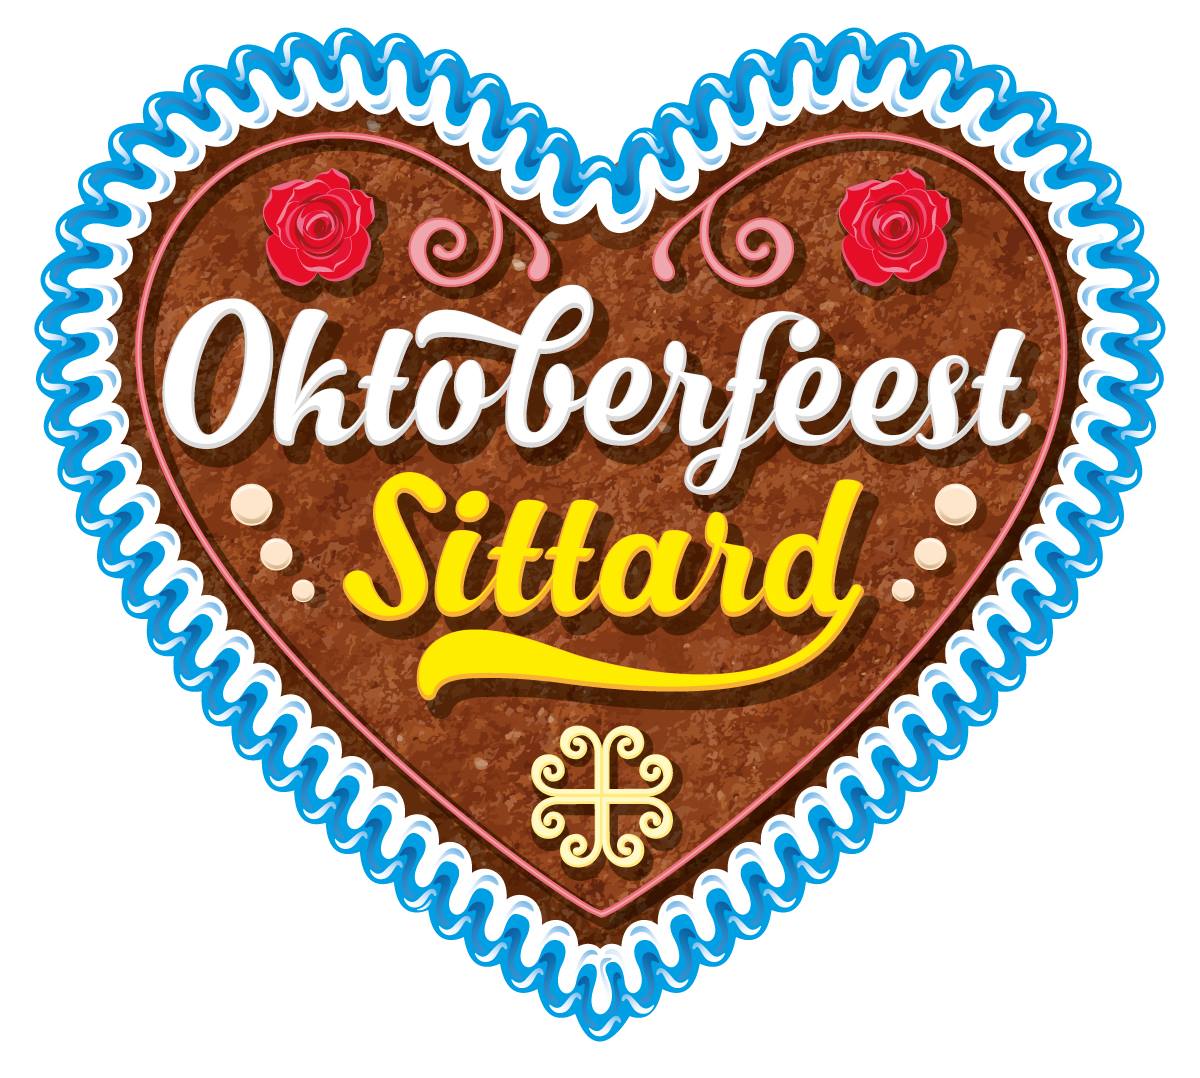 Oktoberfeesten Sittard